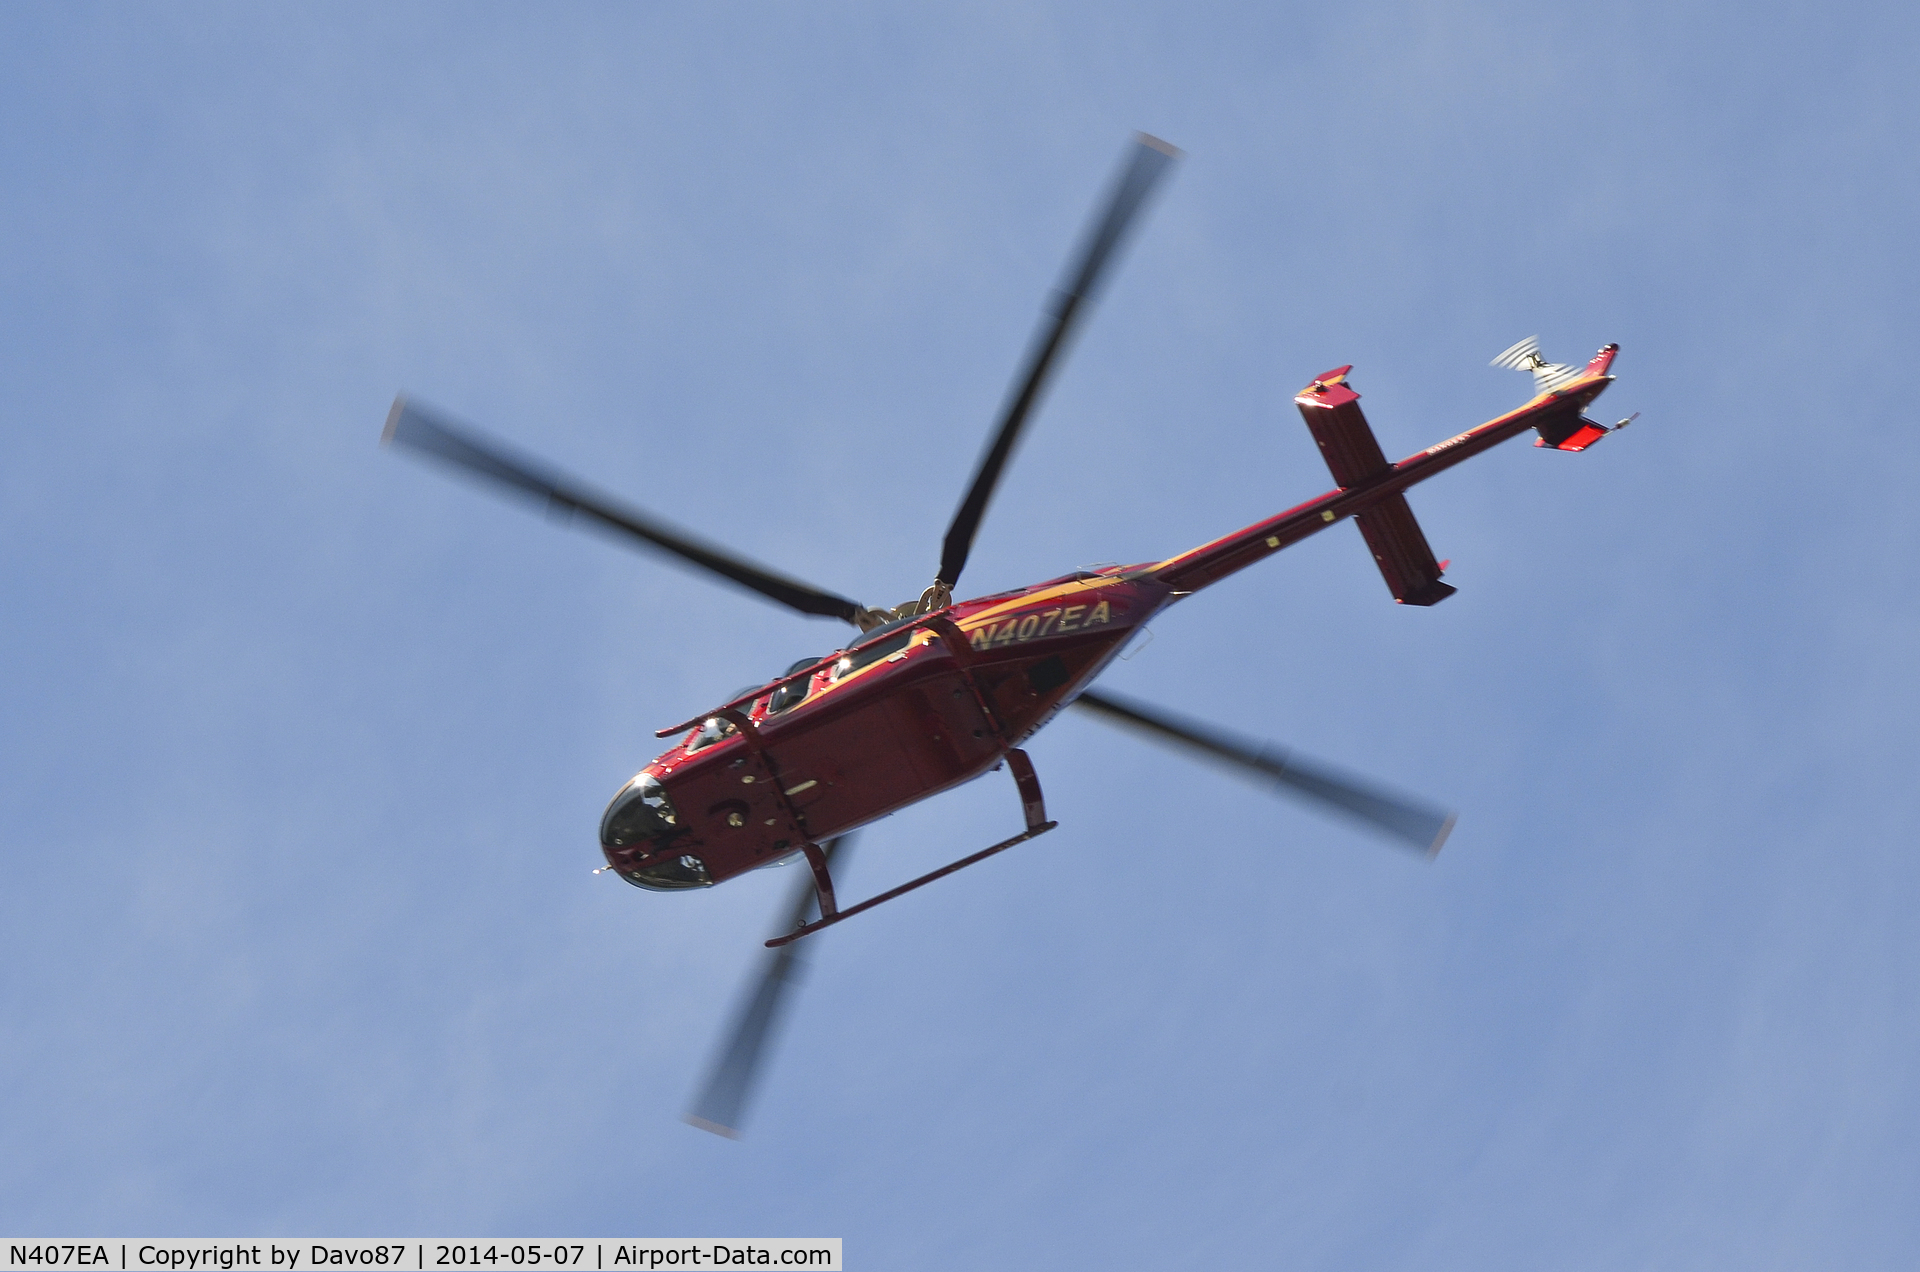 N407EA, 1997 Bell 407 C/N 53157, Photo taken as N407EA flew over Bristol Motor Speedway.